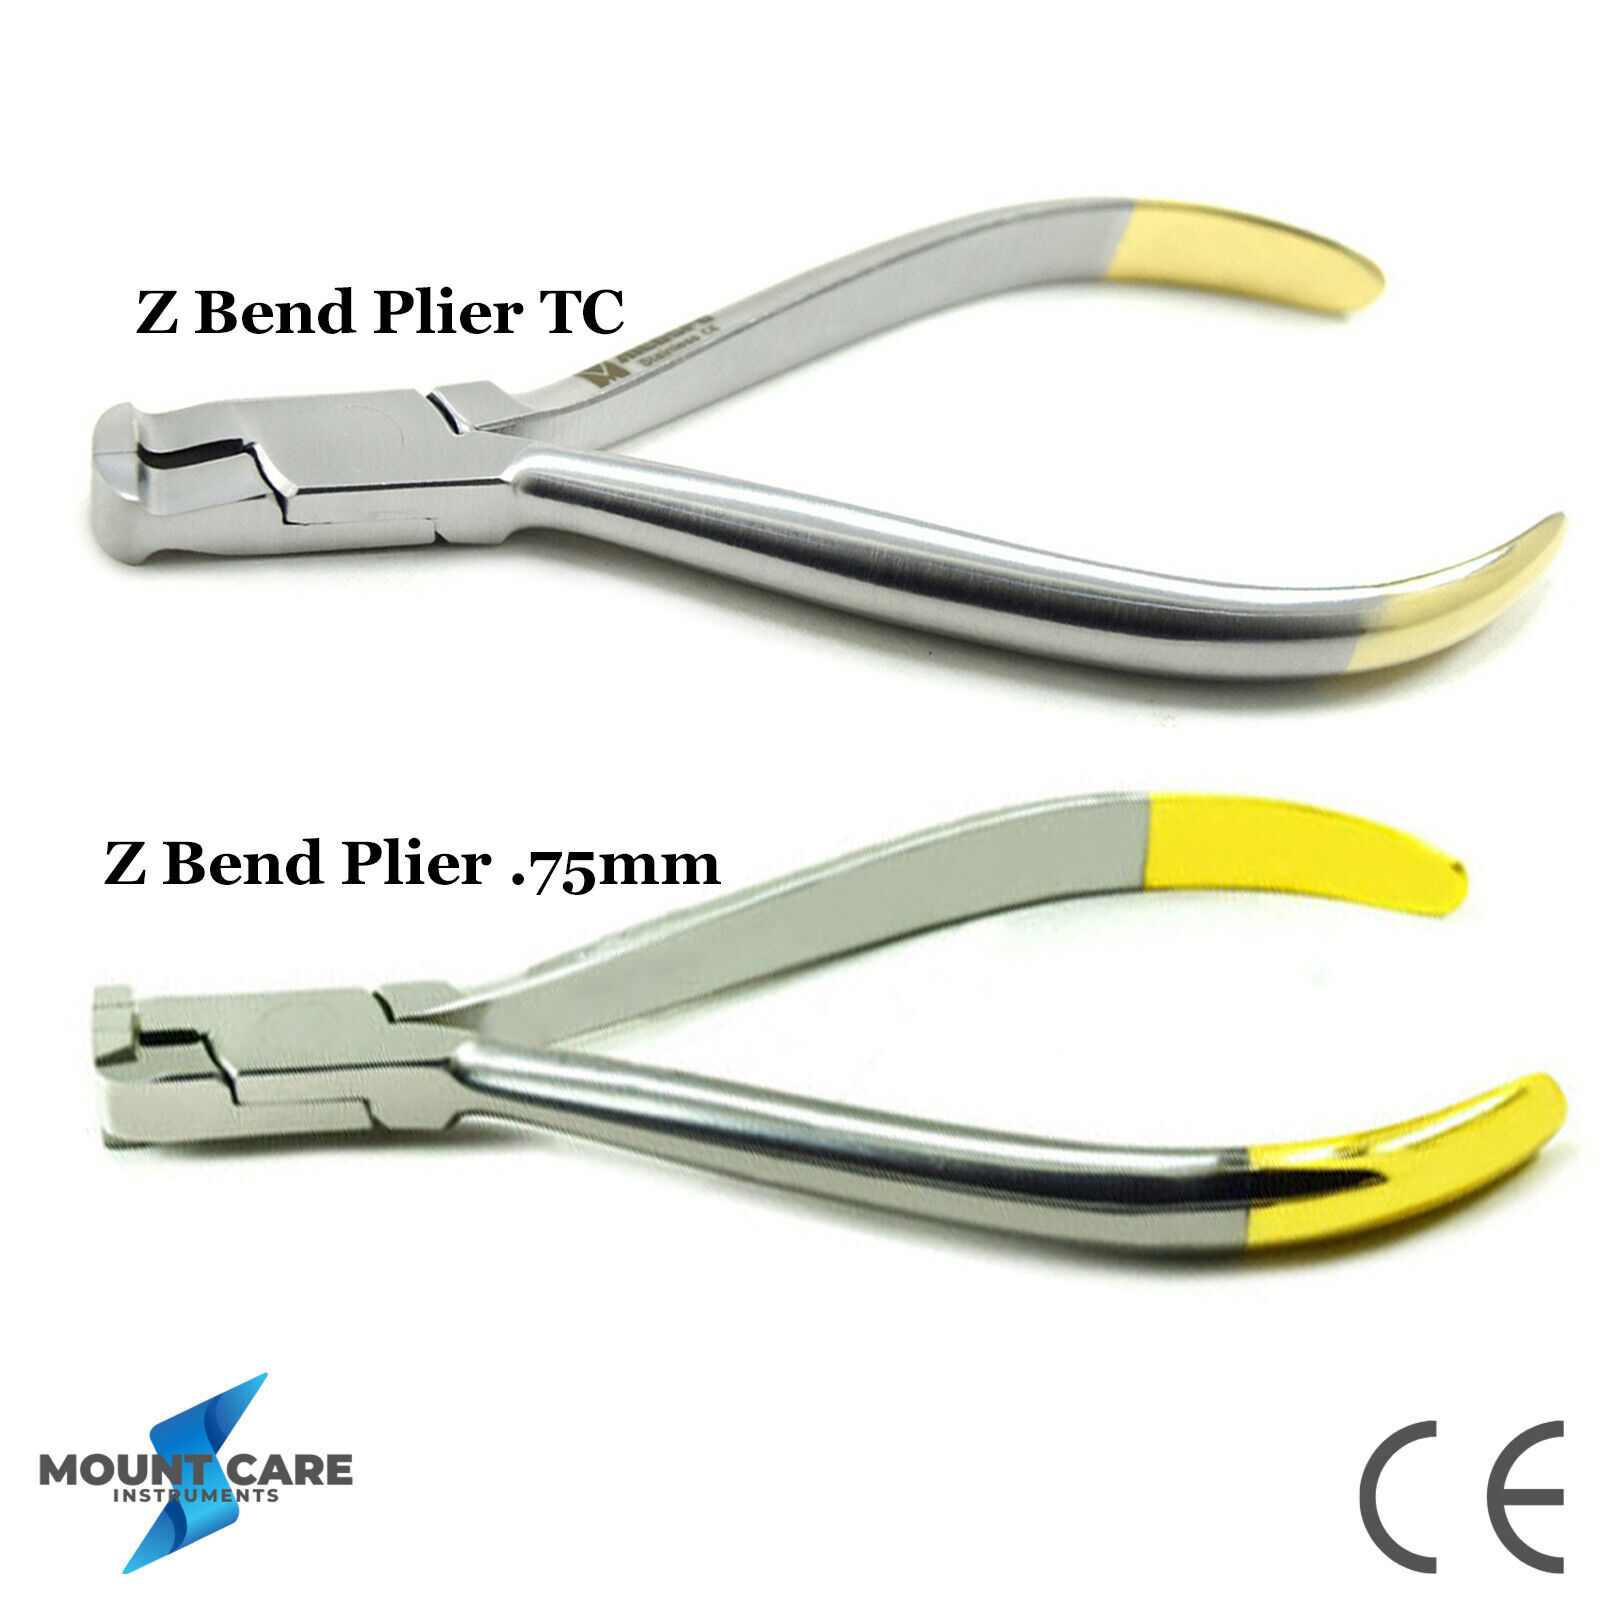 Set of 2 Dental Z-Bend Plier Orthodontic Wire Bending Loop Forming Pliers TC